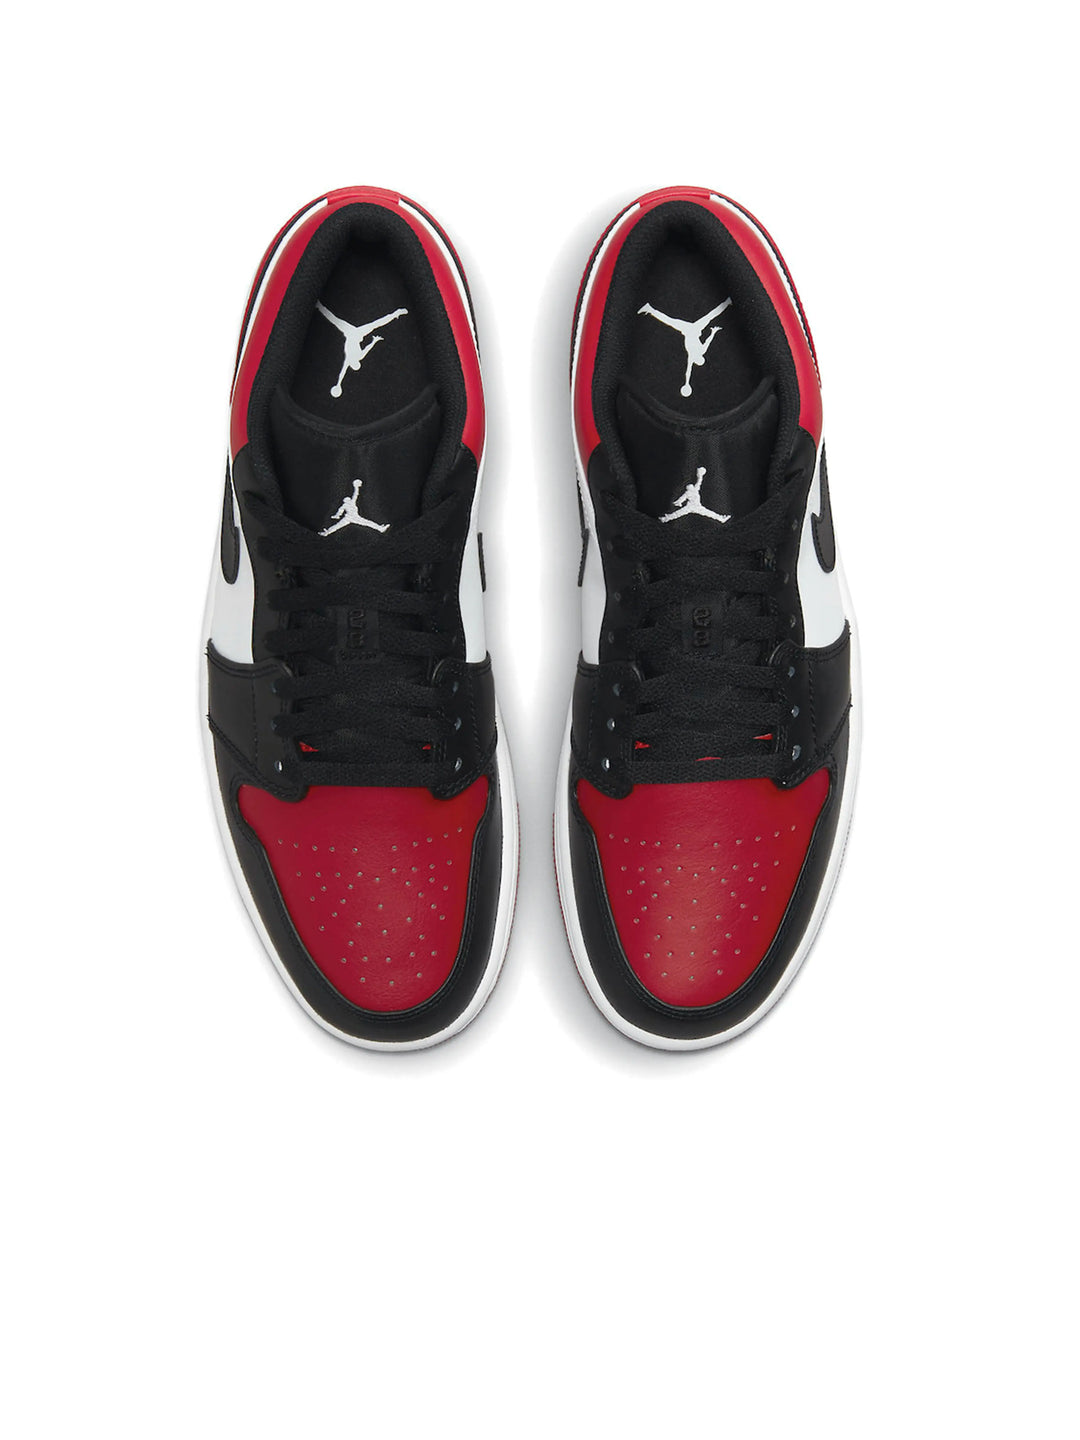 Nike Air Jordan 1 Low Bred Toe Prior